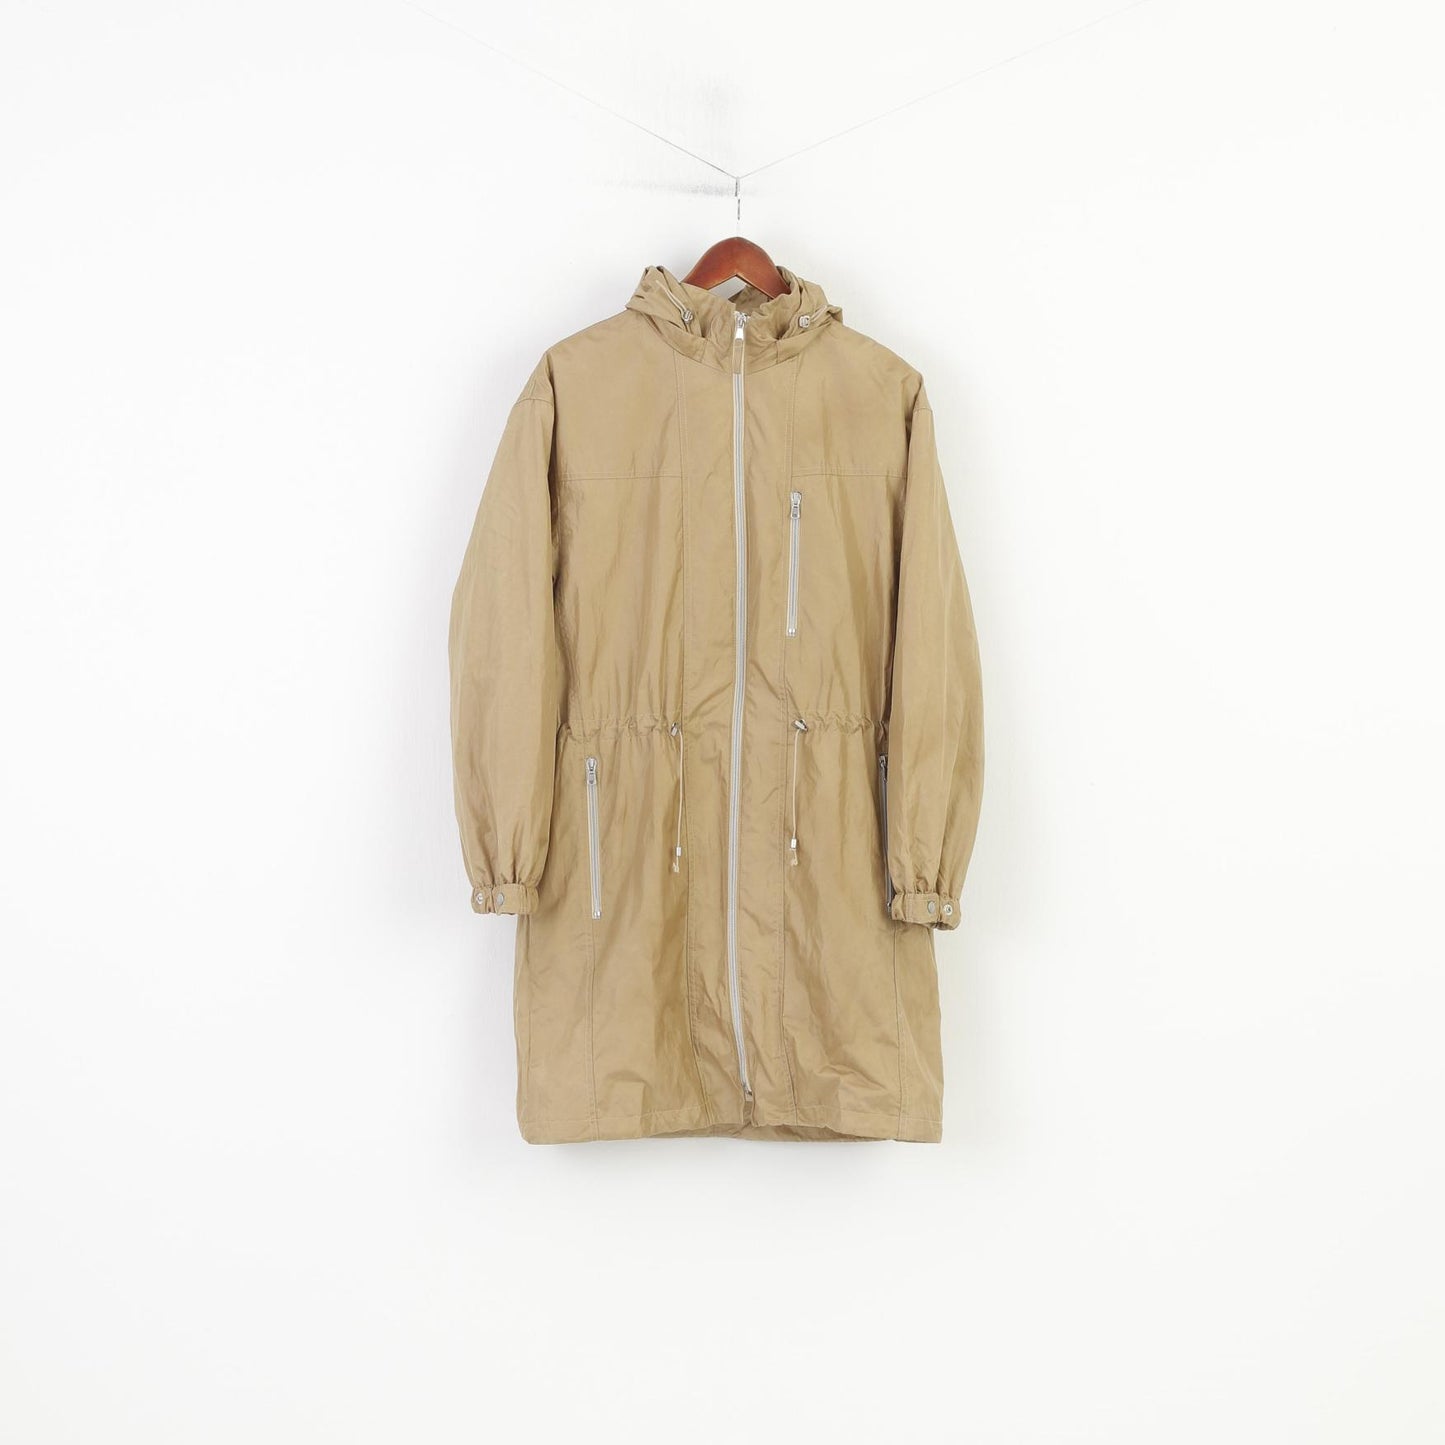 FS Women 10 M Jacket Parka Nylon Full Zipper Gold Waterproof Hoodeed Gore-Tex Long Jacket Outdoor Vintage Top